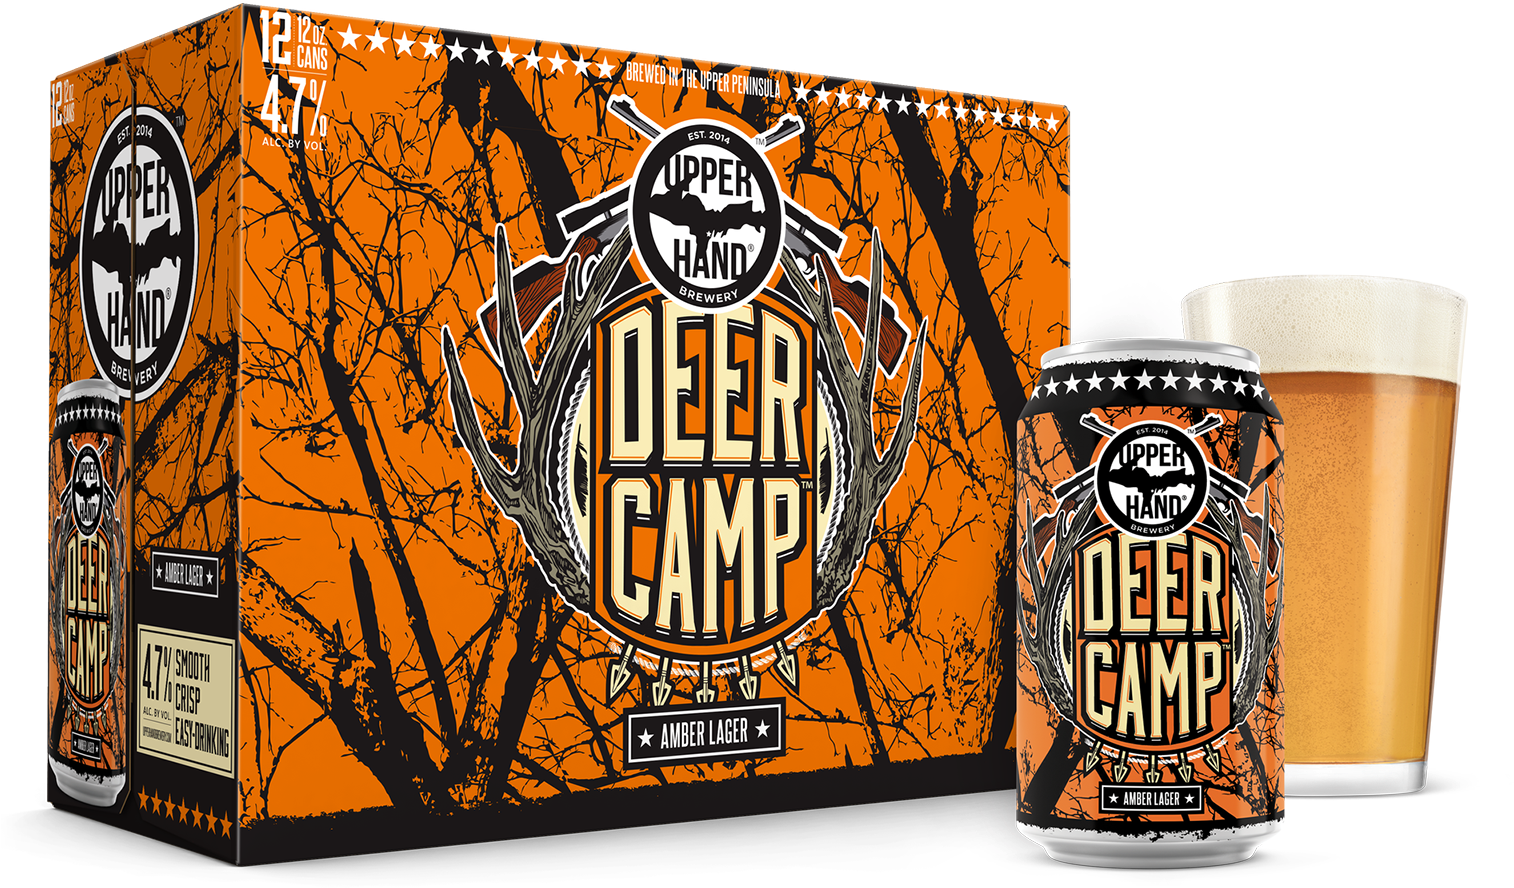 Deer Camp Brand Rendering - Upper Hand Deer Camp Clipart (1638x983), Png Download